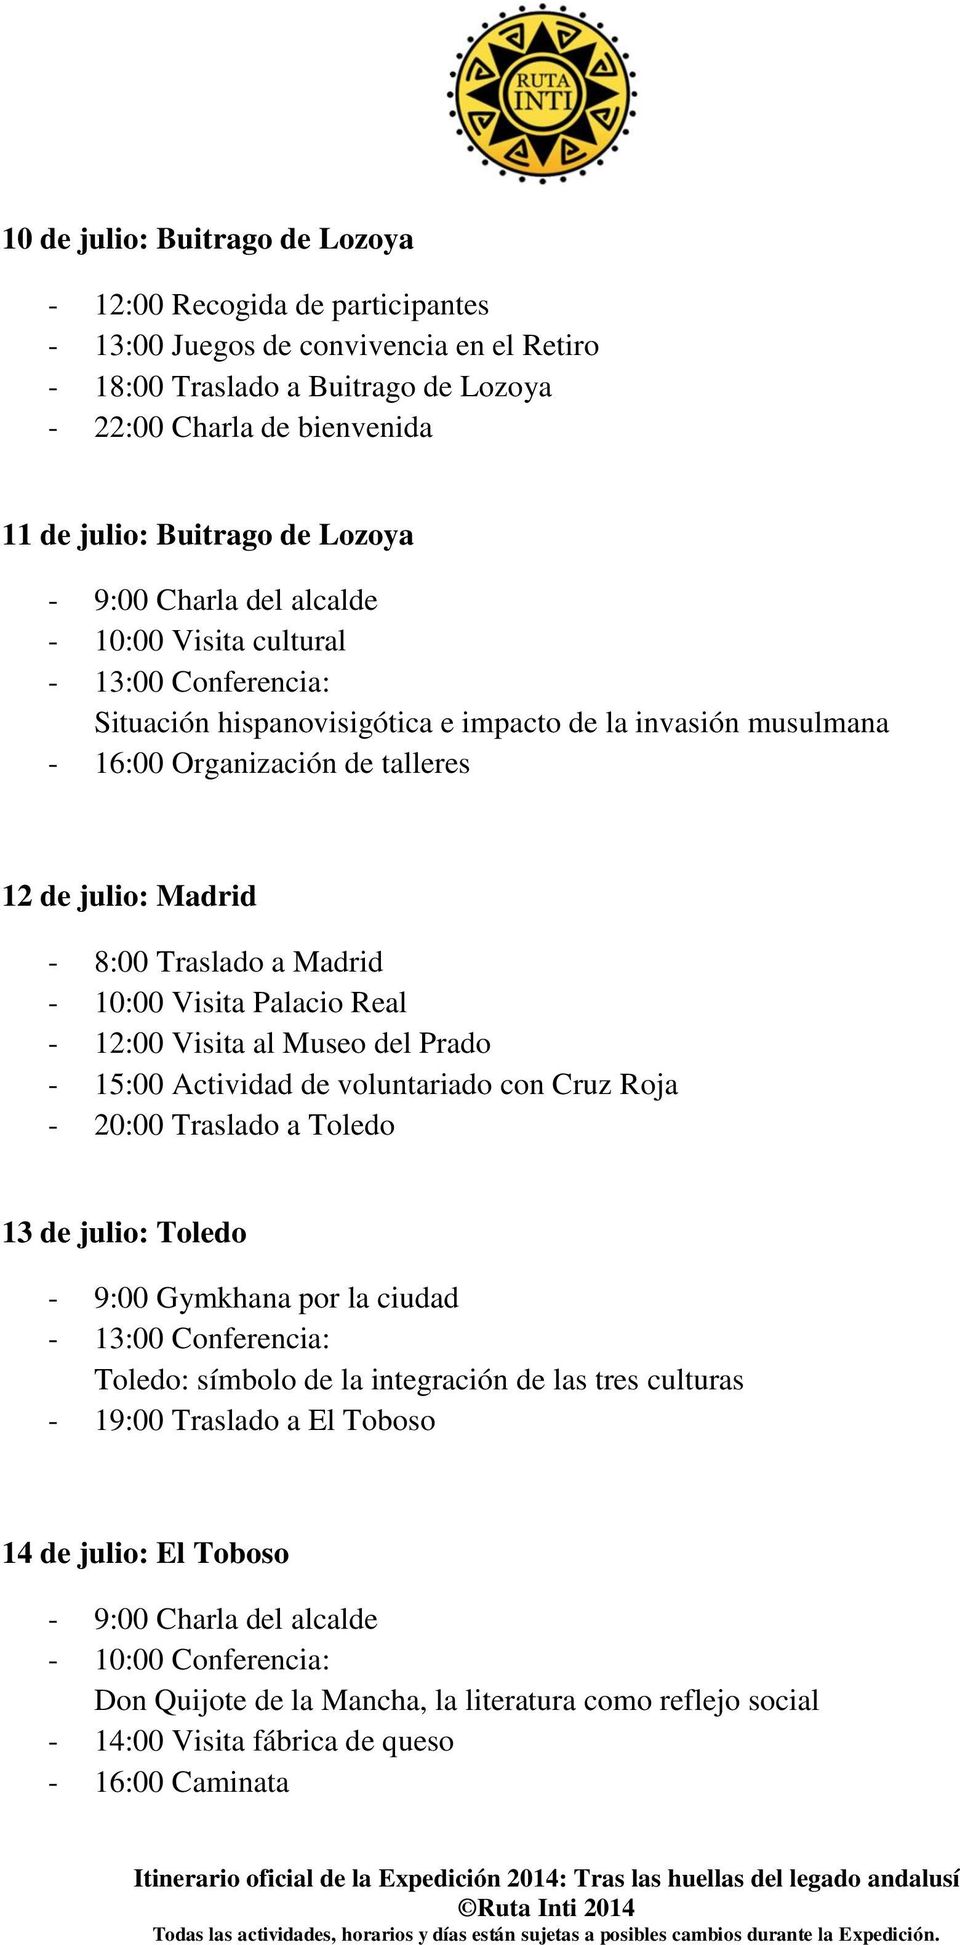 Madrid - 10:00 Visita Palacio Real - 12:00 Visita al Museo del Prado - 15:00 Actividad de voluntariado con Cruz Roja - 20:00 Traslado a Toledo 13 de julio: Toledo - 9:00 Gymkhana por la ciudad